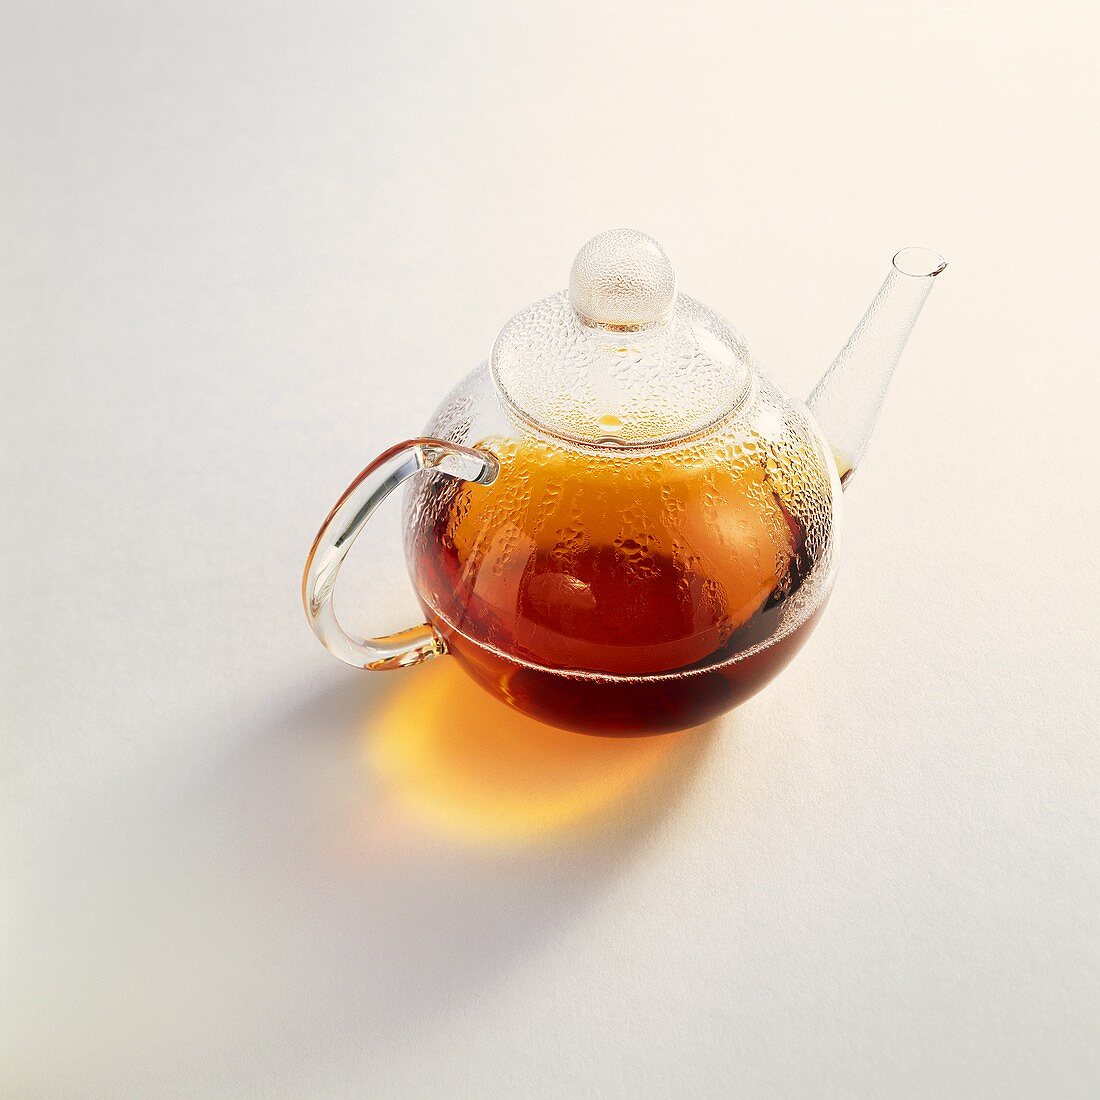 Tea in a glass pot